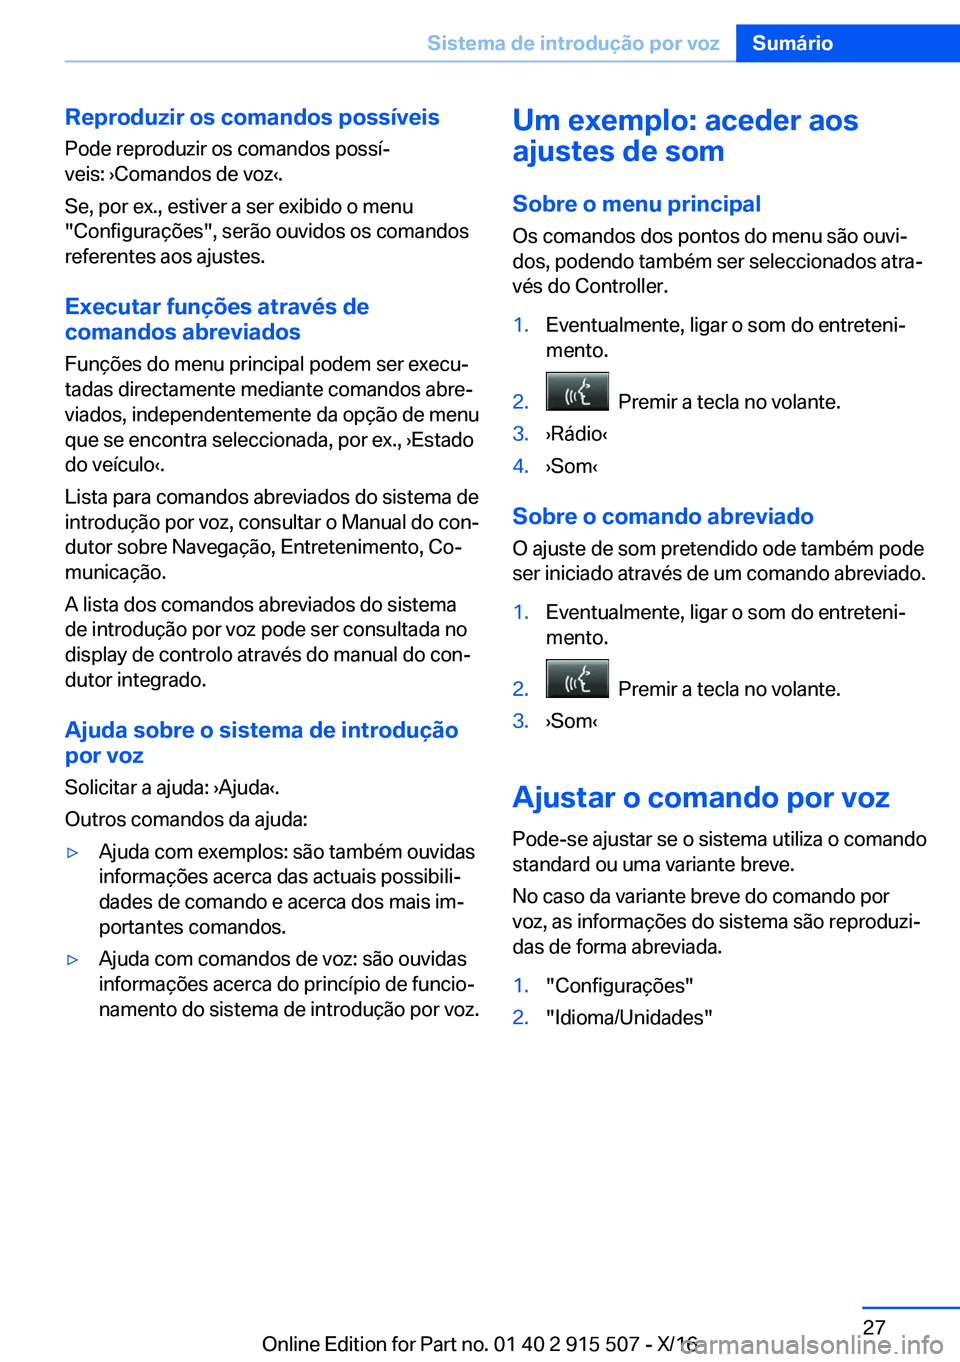 BMW X5 2017  Manual do condutor (in Portuguese) �R�e�p�r�o�d�u�z�i�r��o�s��c�o�m�a�n�d�o�s��p�o�s�s�